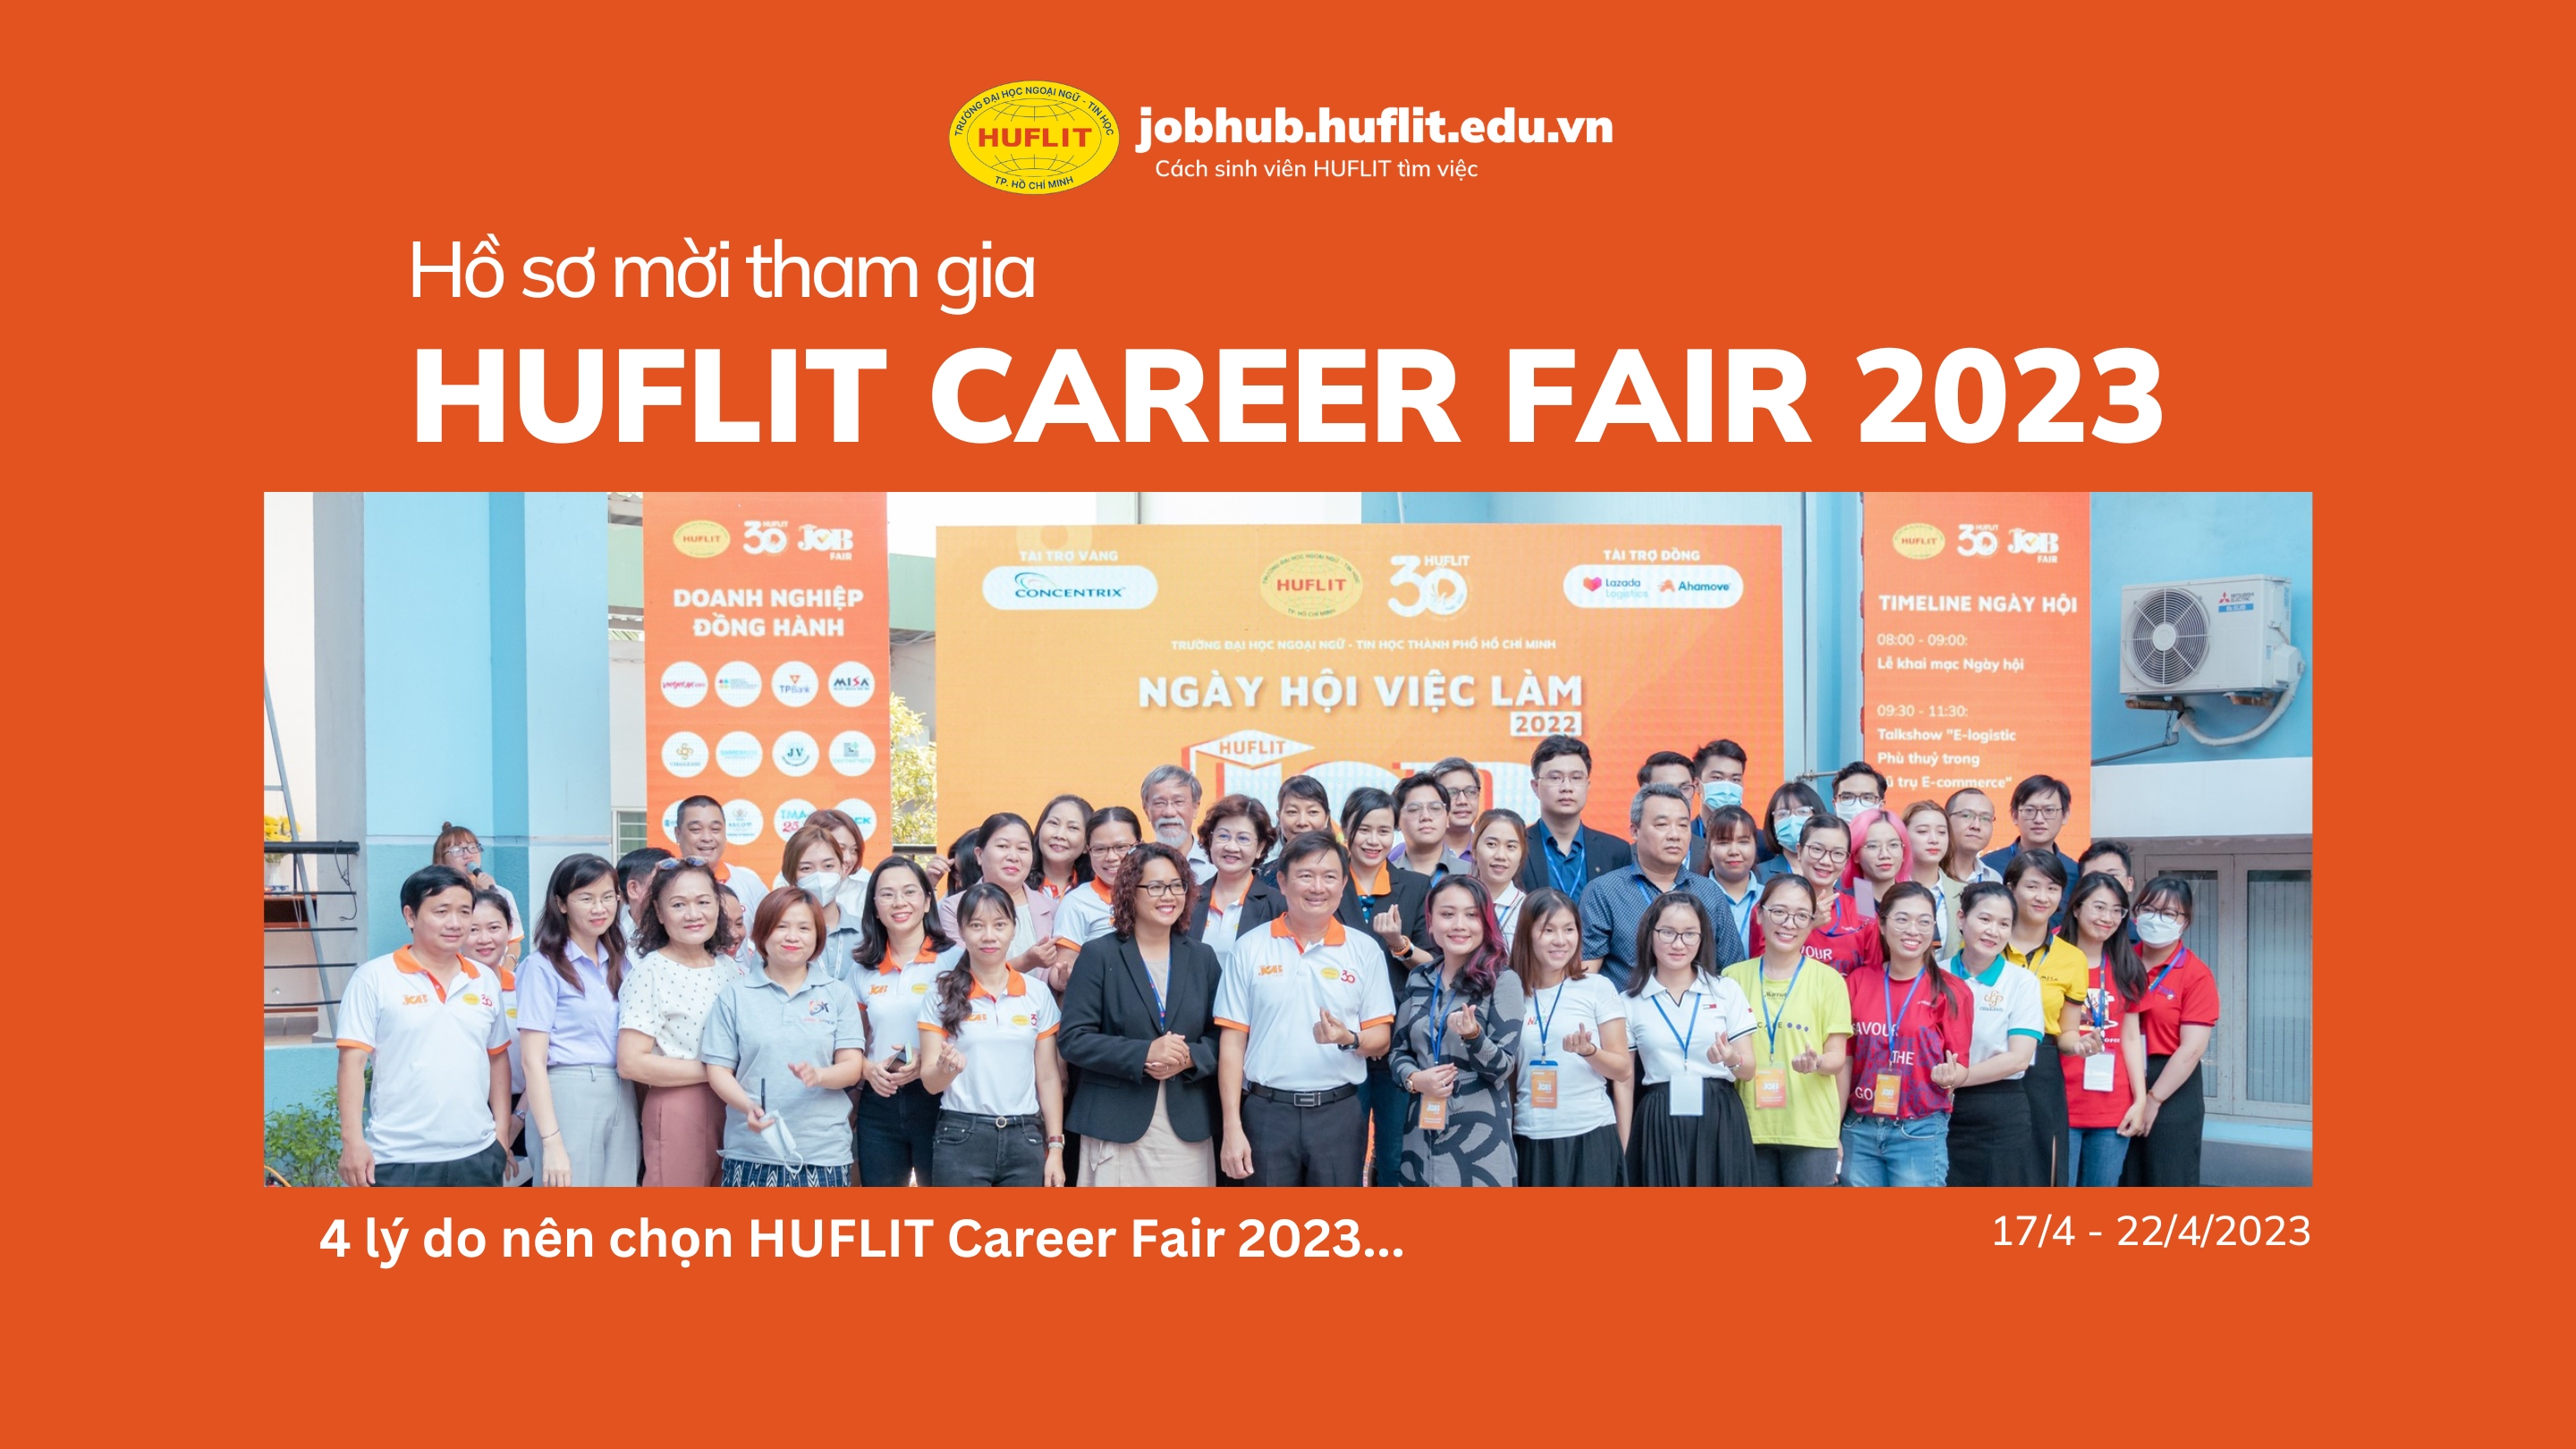 HUFLIT Career fair 23 - Porfolio